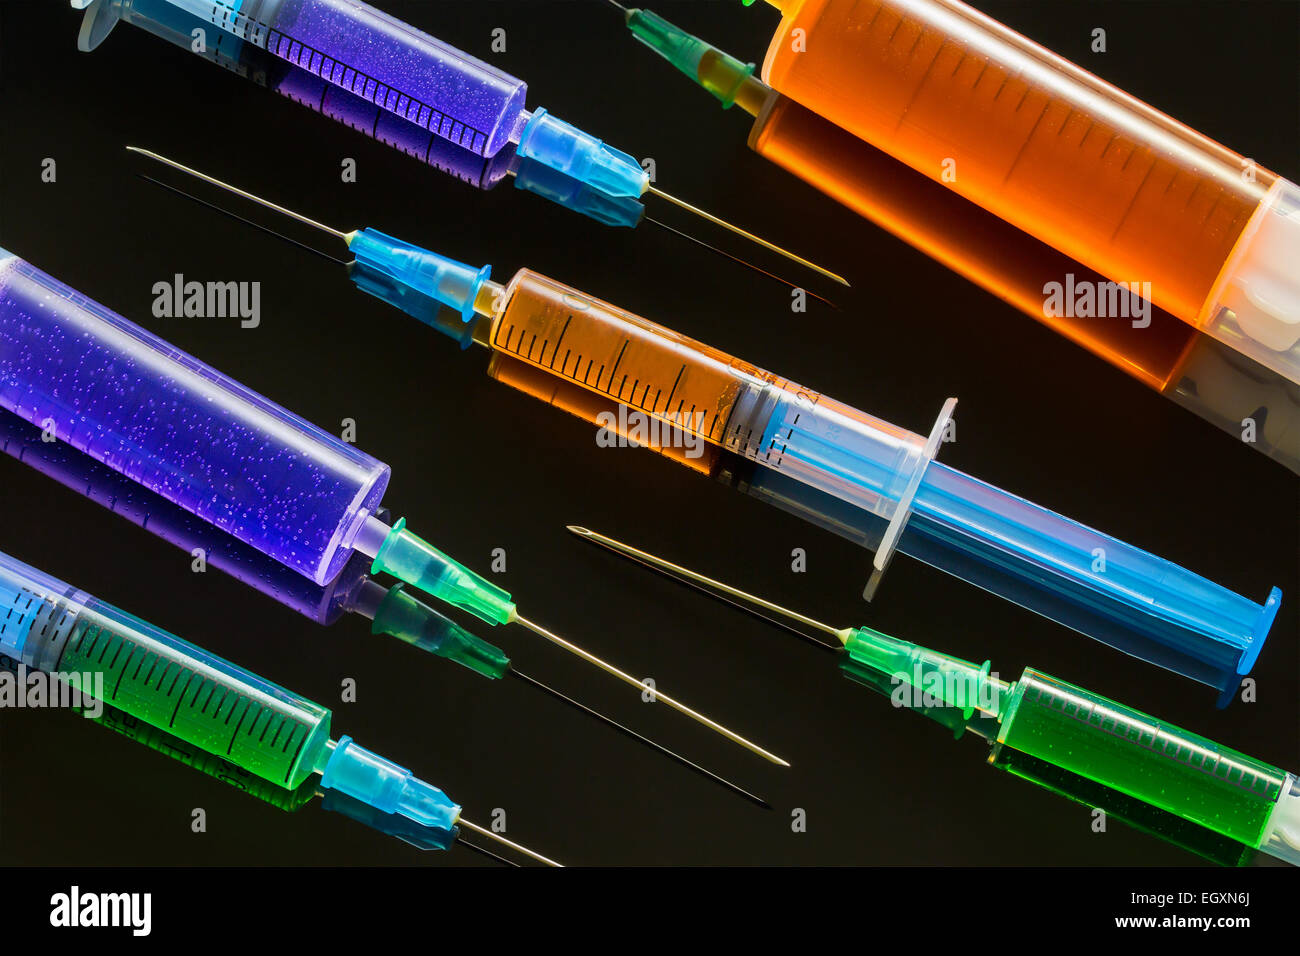 syringes Stock Photo